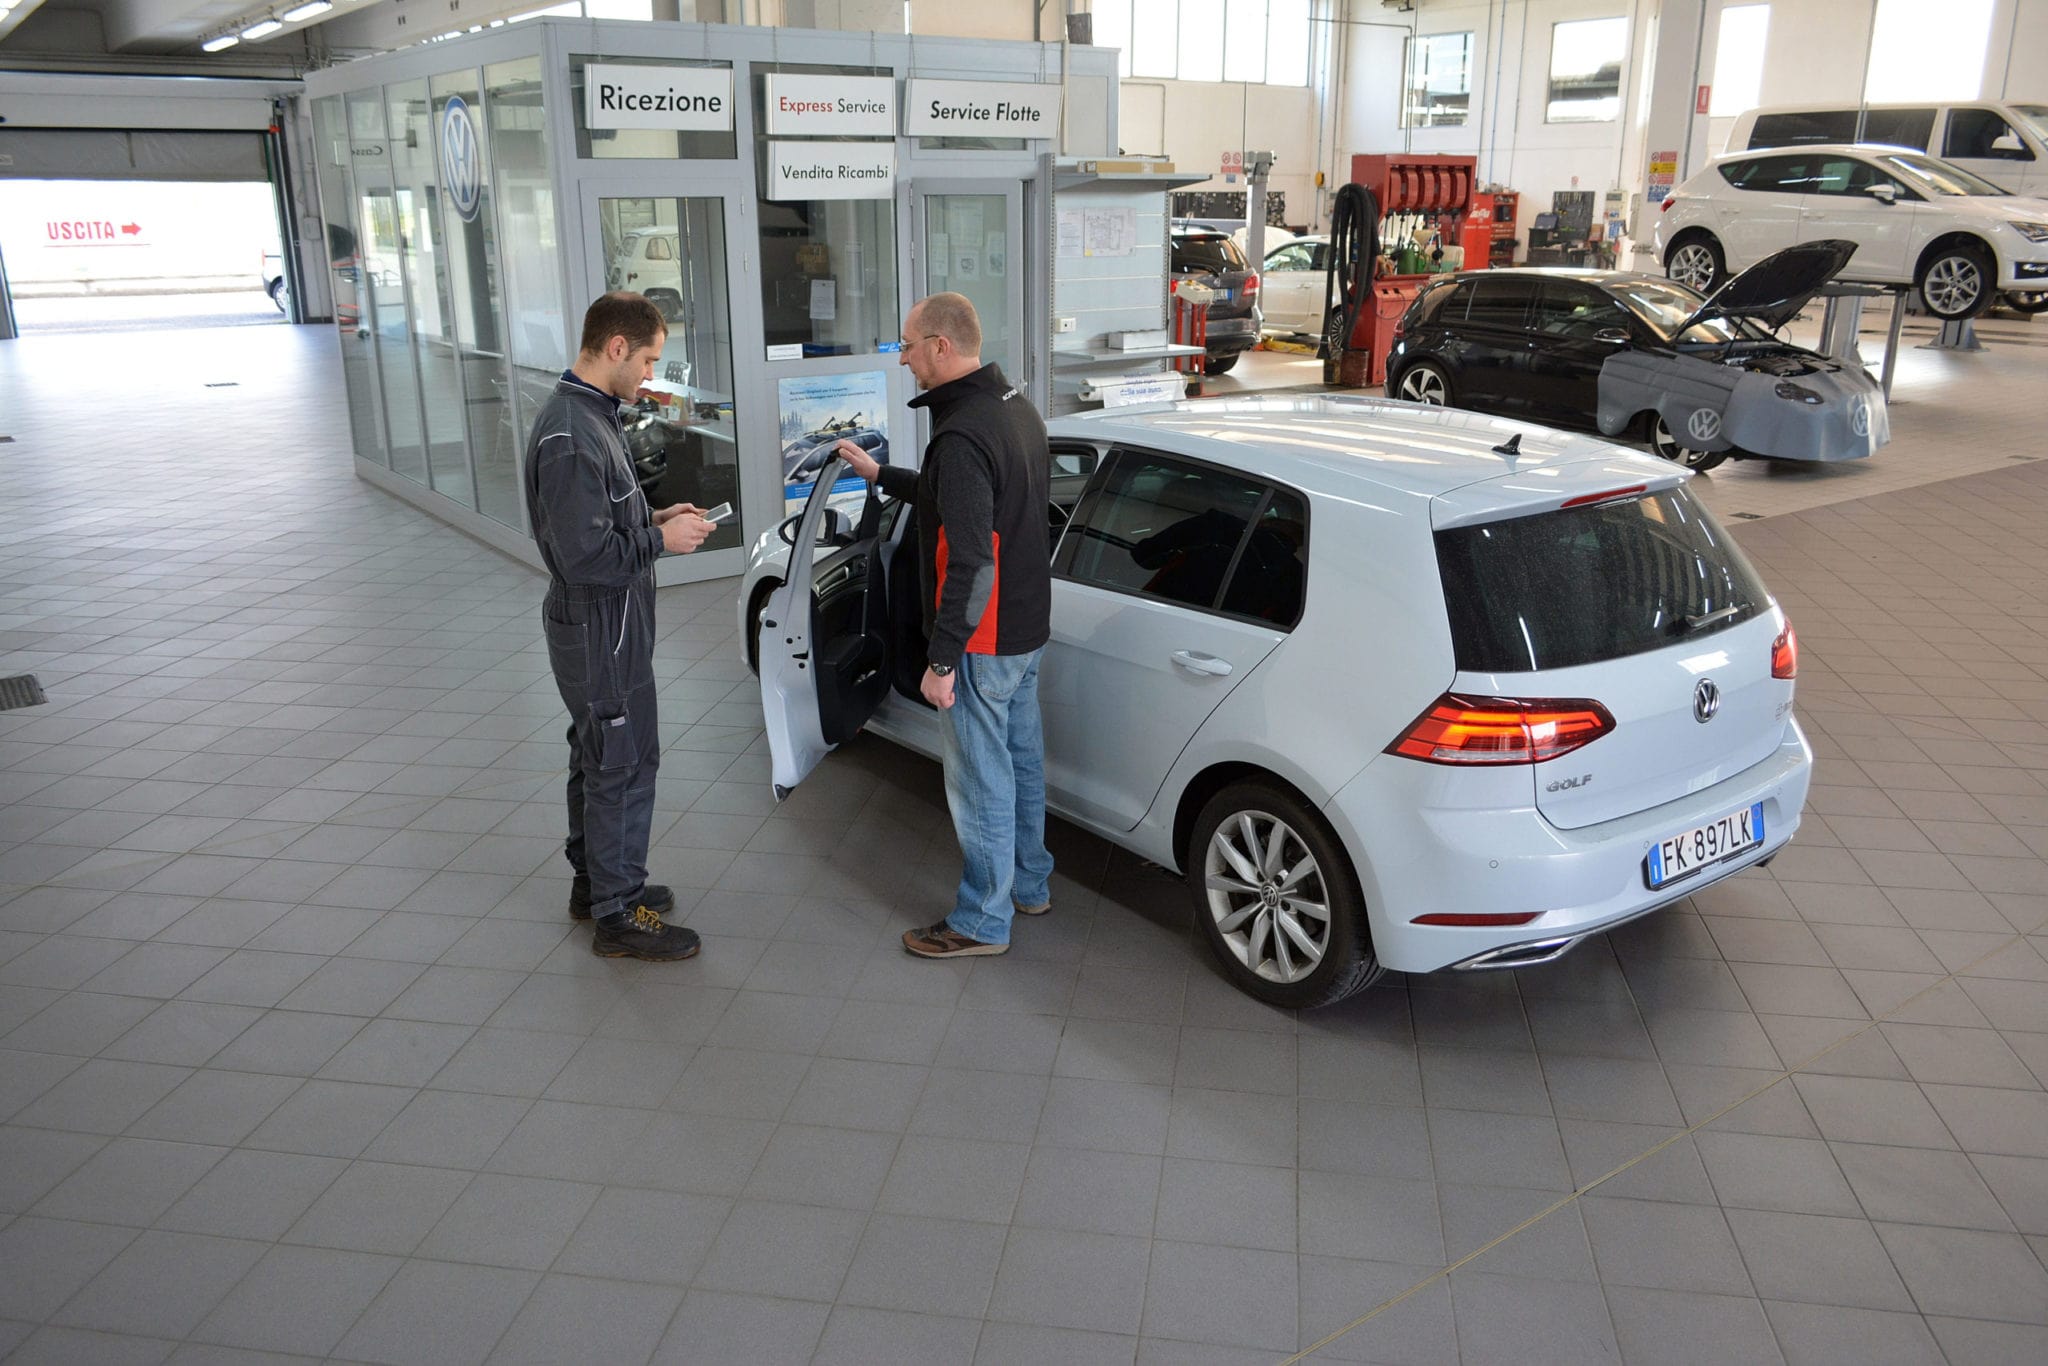 officina e assistenza autorizzata Volkswagen service partner per Brescia Cremona e provincia